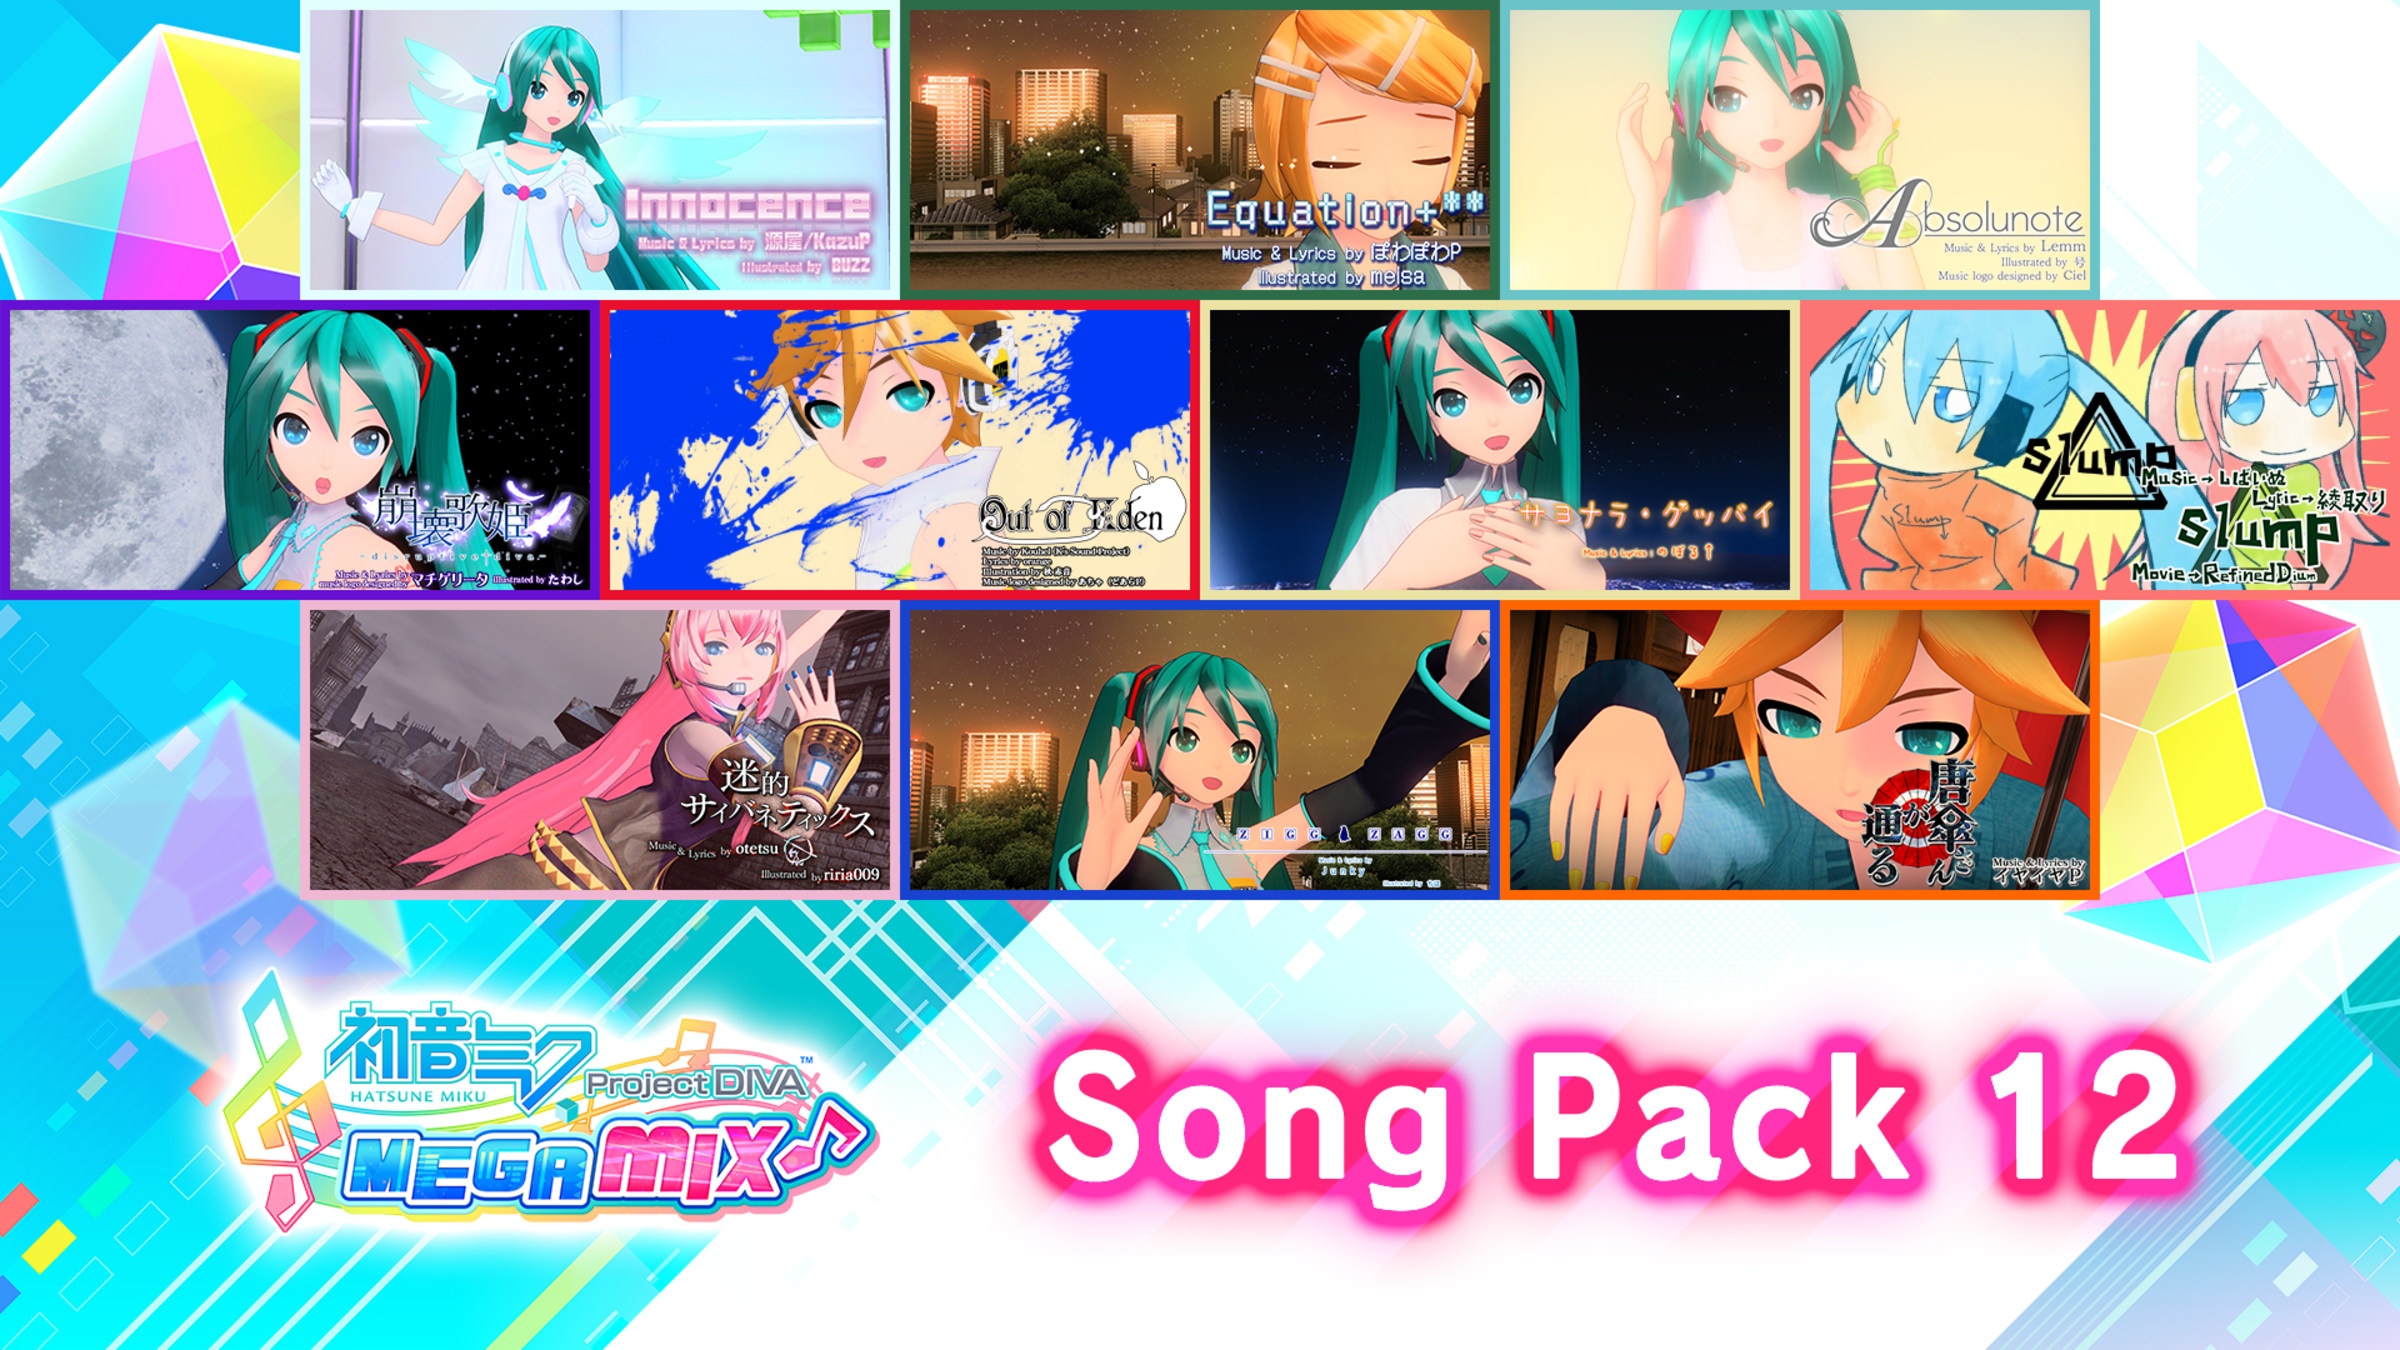 SEGA Music Pack/Bundle/Nintendo Switch/Nintendo